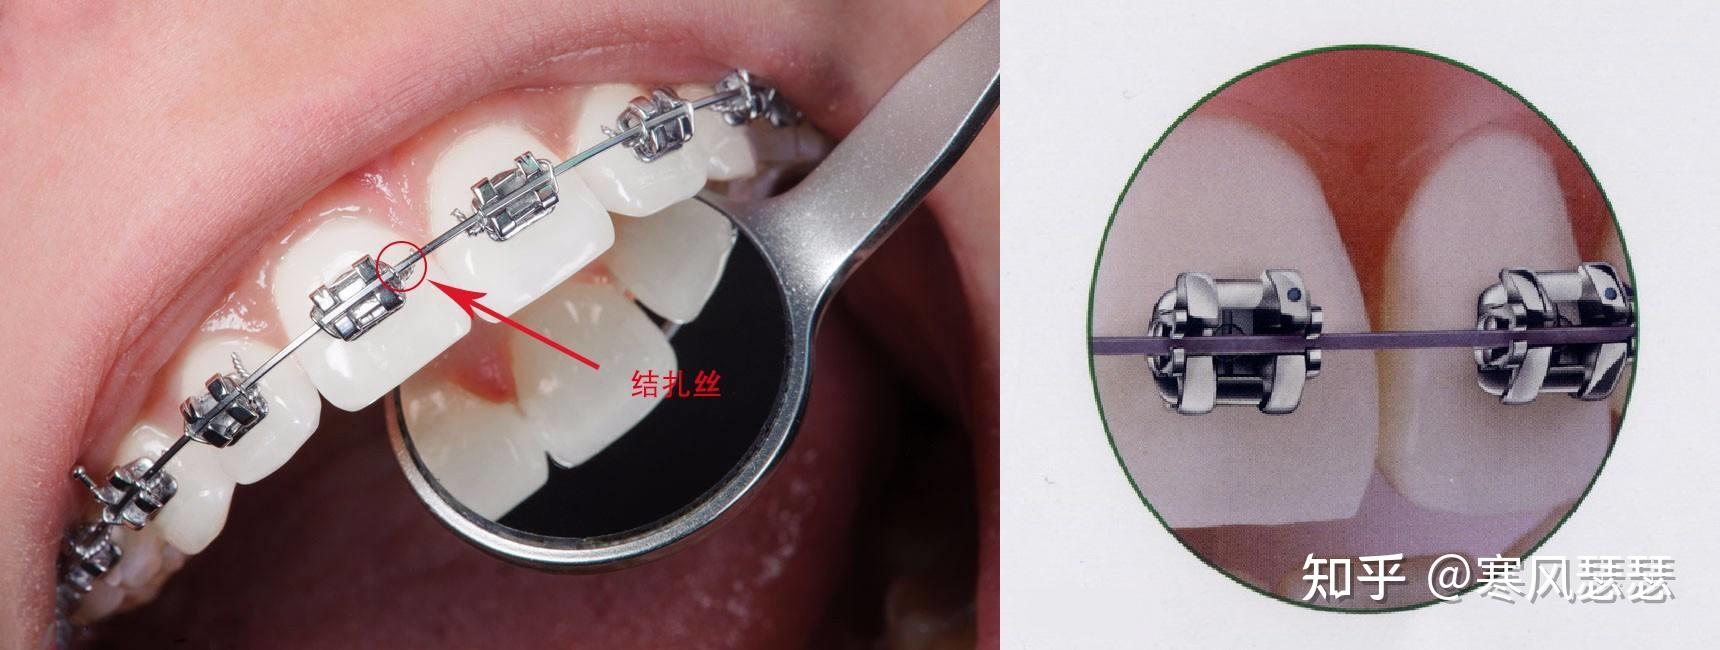 牙齿矫正的方式都有哪些?它们有什么异同?